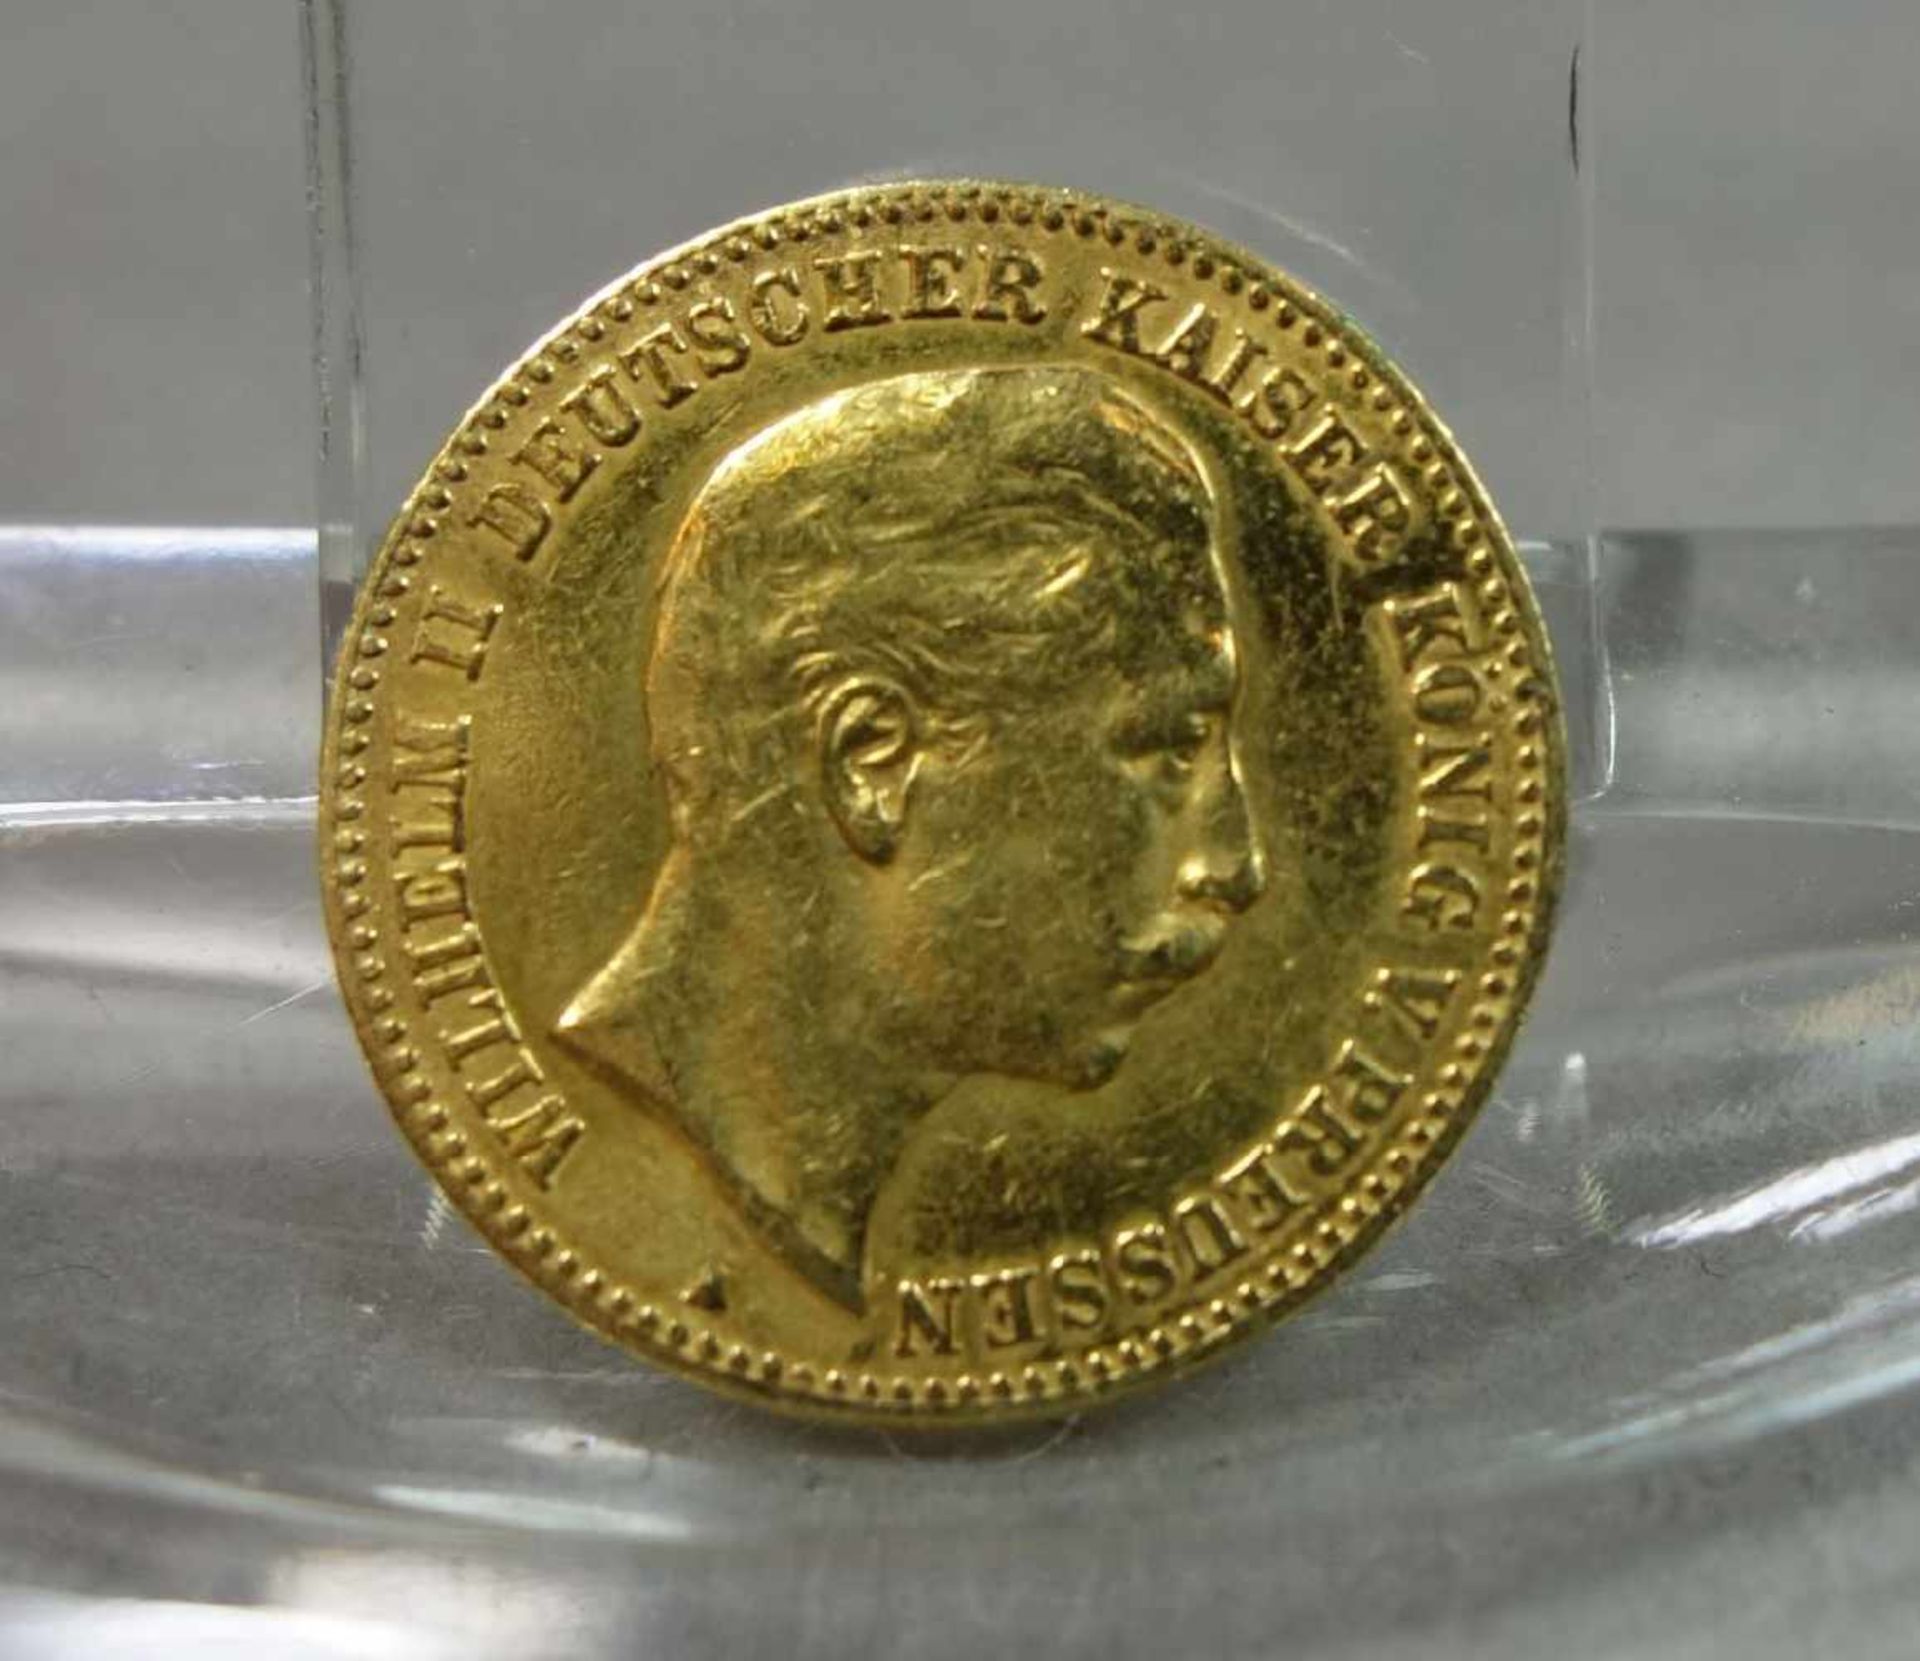 GOLDMÜNZE: DEUTSCHES REICH - 10 MARK / gold coin, Kaiserreich / Preußen, 1896, 3,8 Gramm, 900er - Bild 2 aus 2